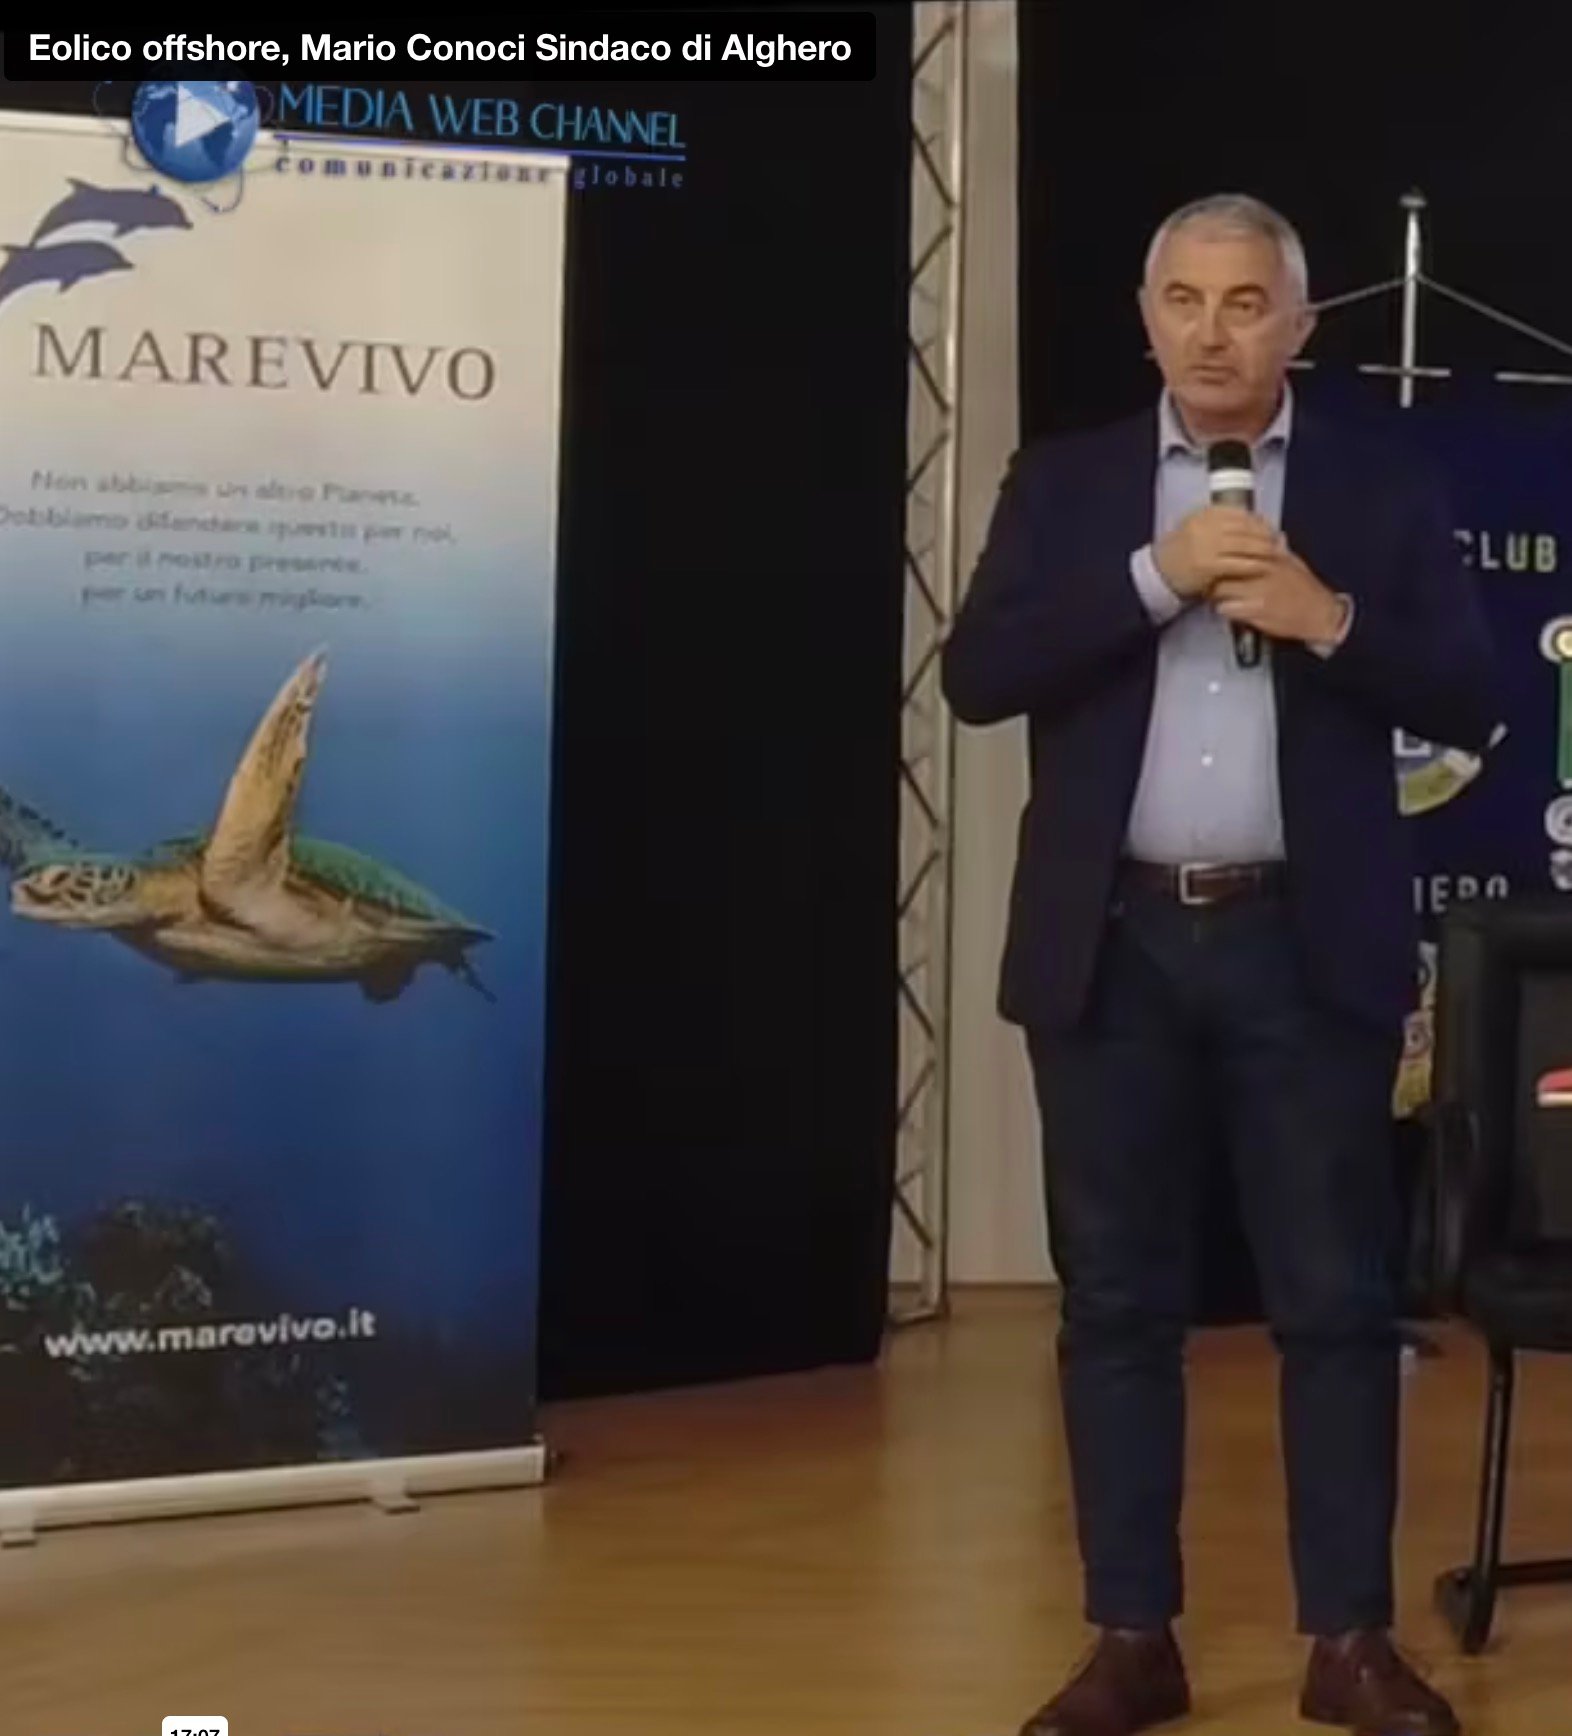 <strong>Eolico offshore, Mario Conoci Sindaco di Alghero</strong>